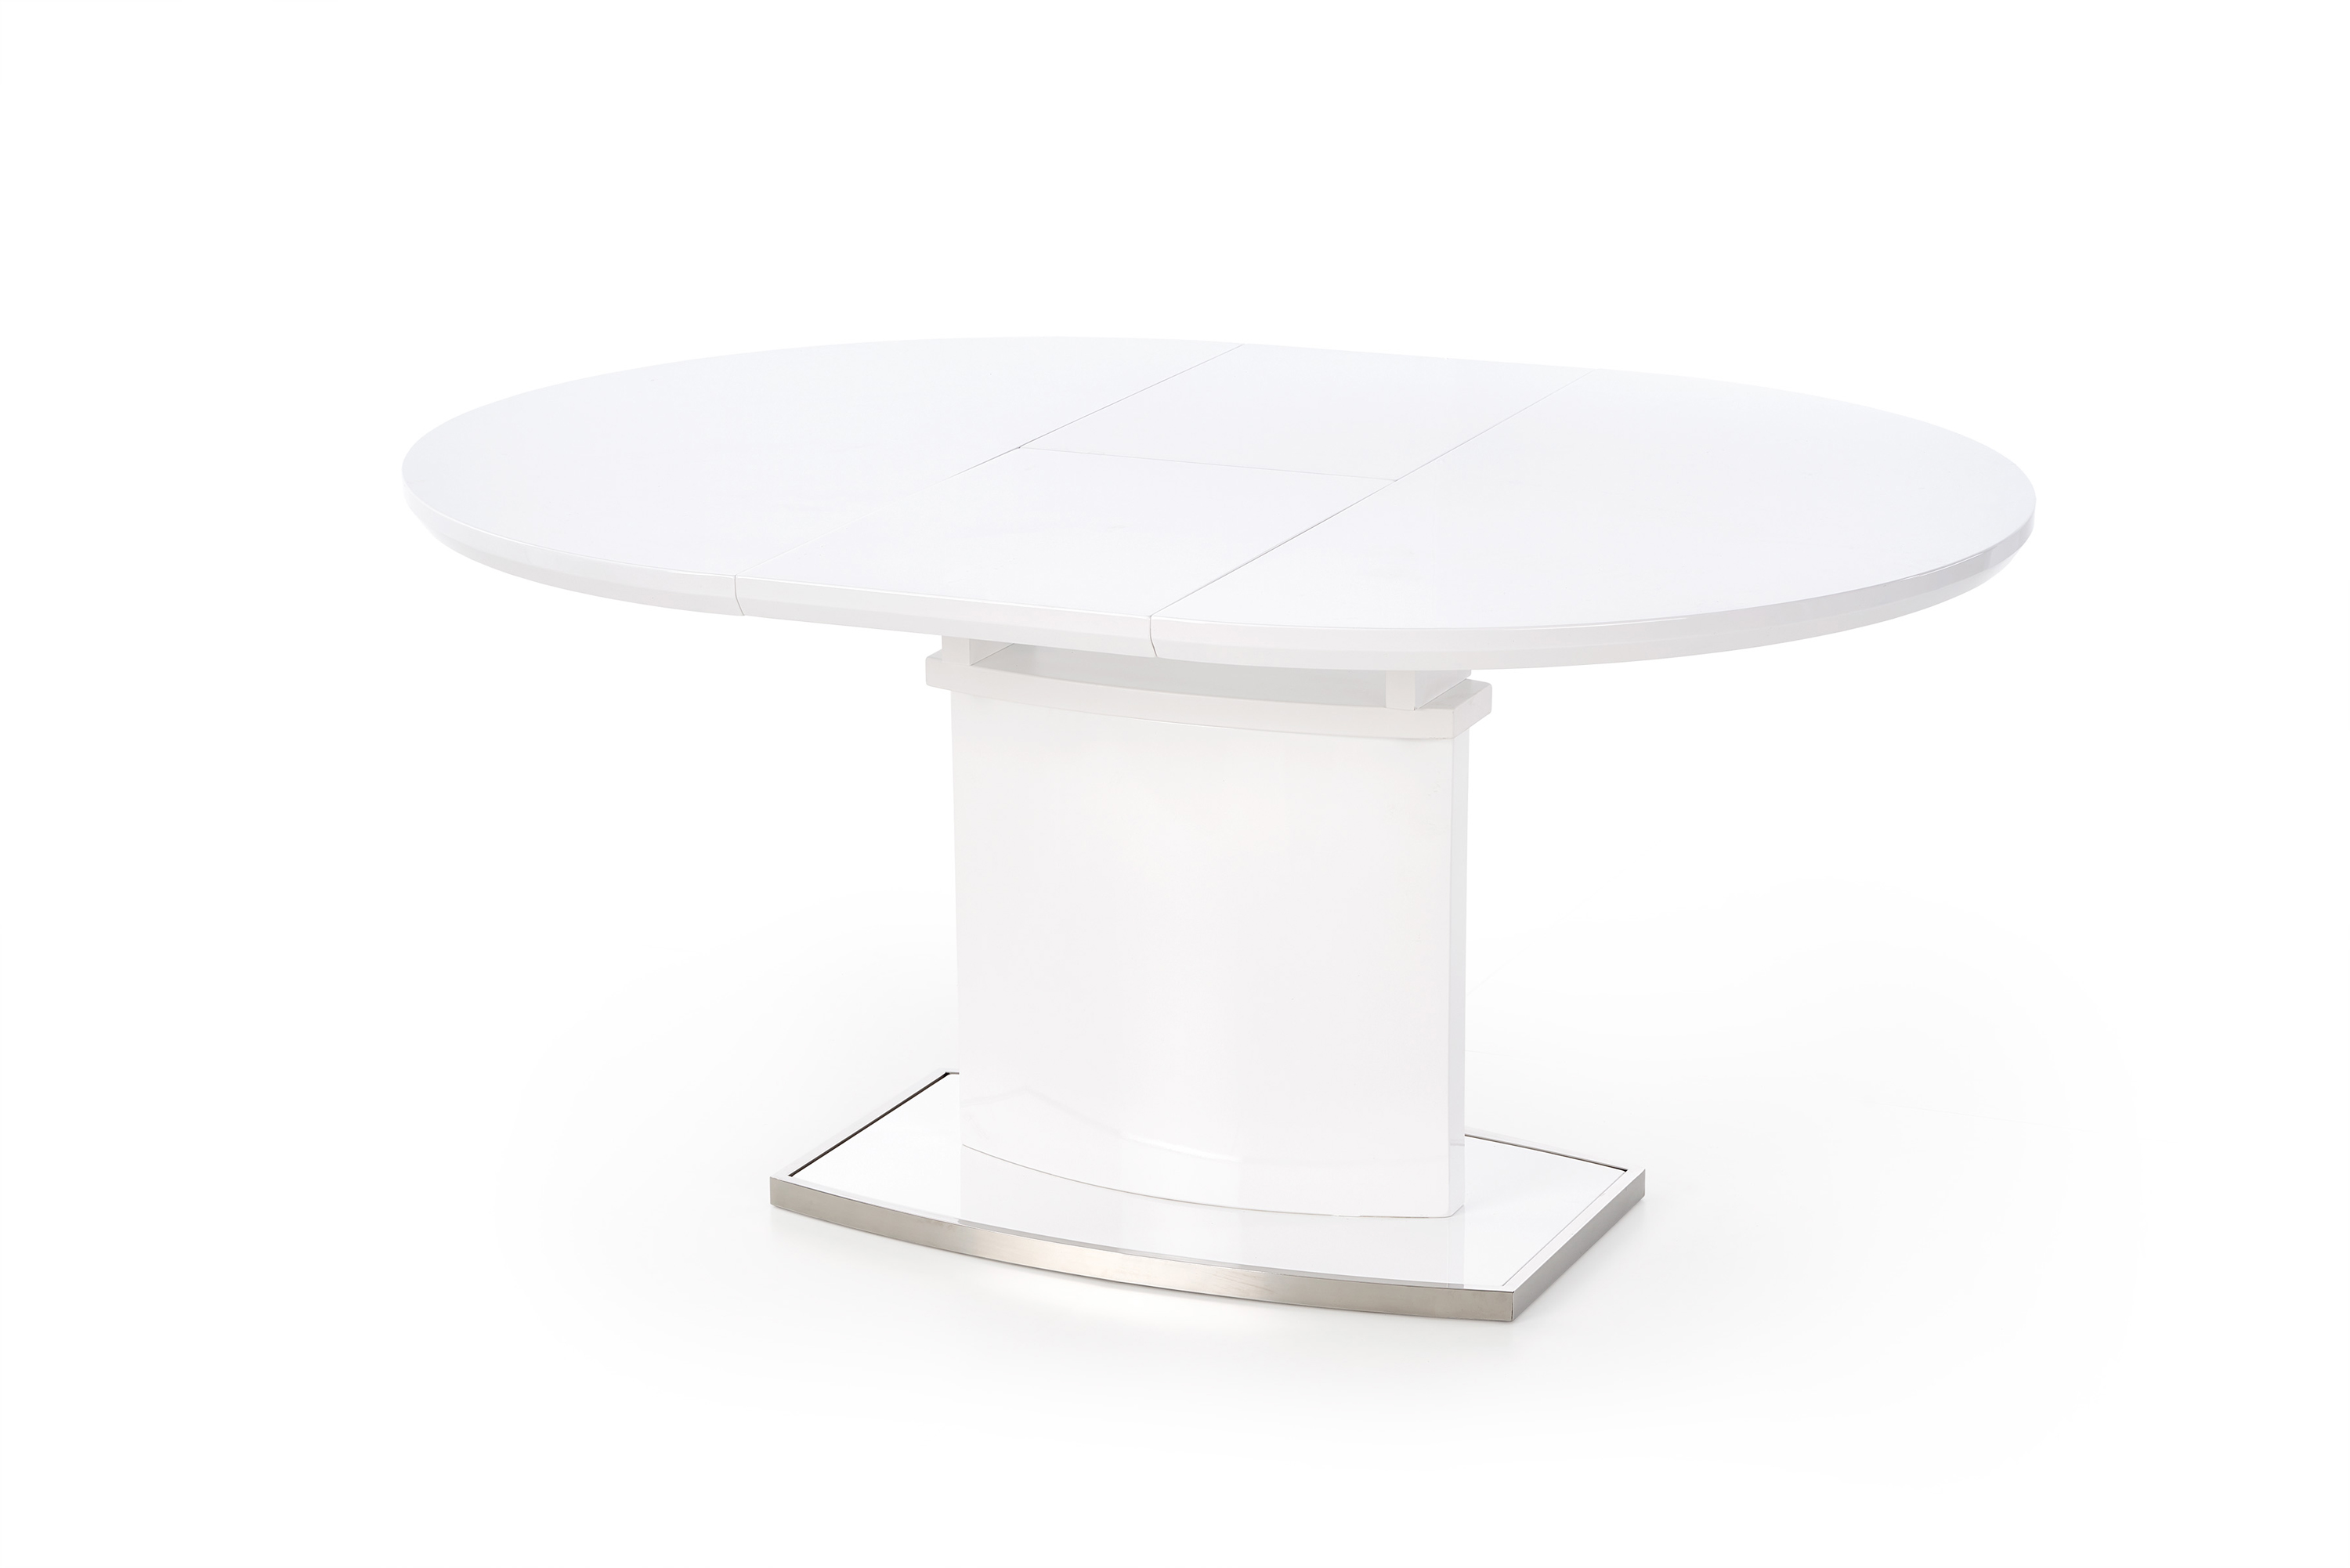 FEDERICO Stůl rozkládací Bílý federico Stůl rozkládací Bílý, prestige line